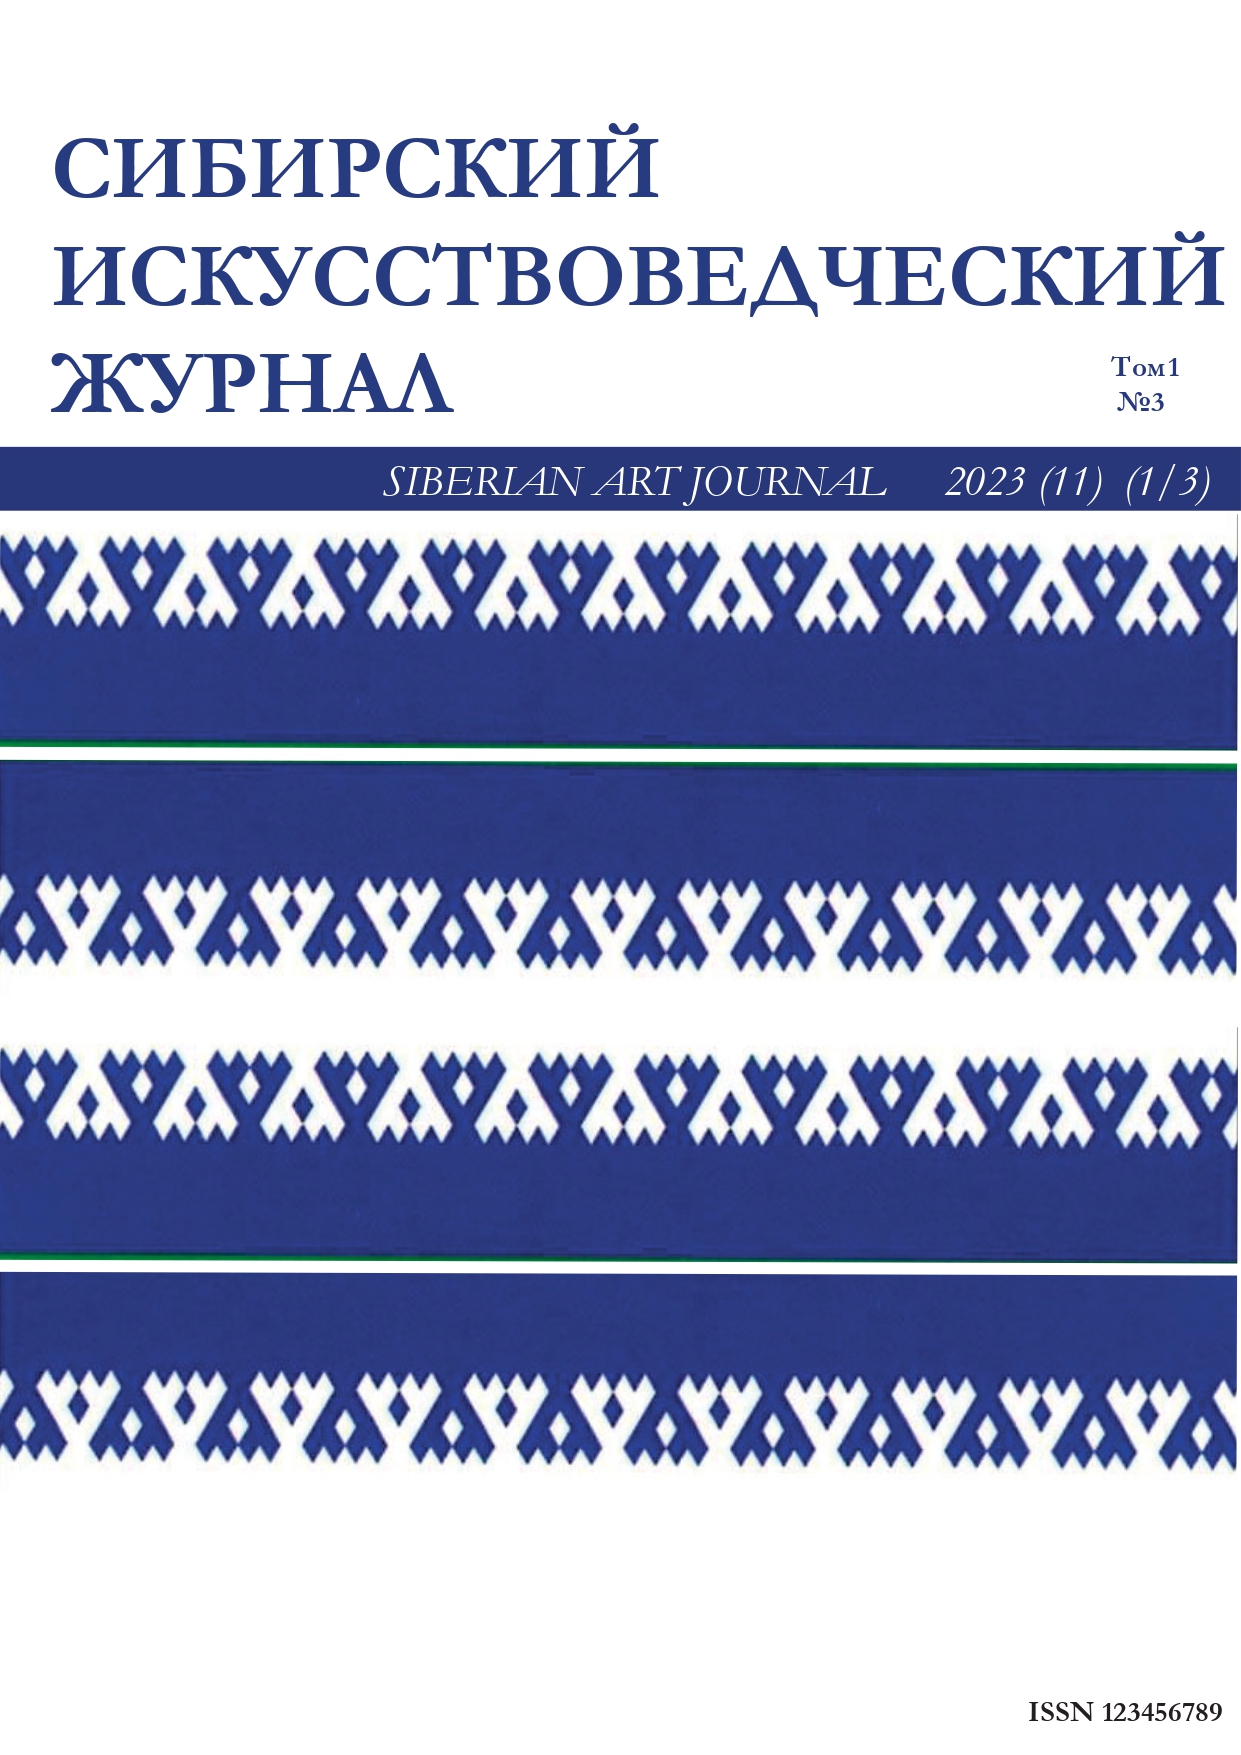             Сибирский искусствоведческий журнал
    